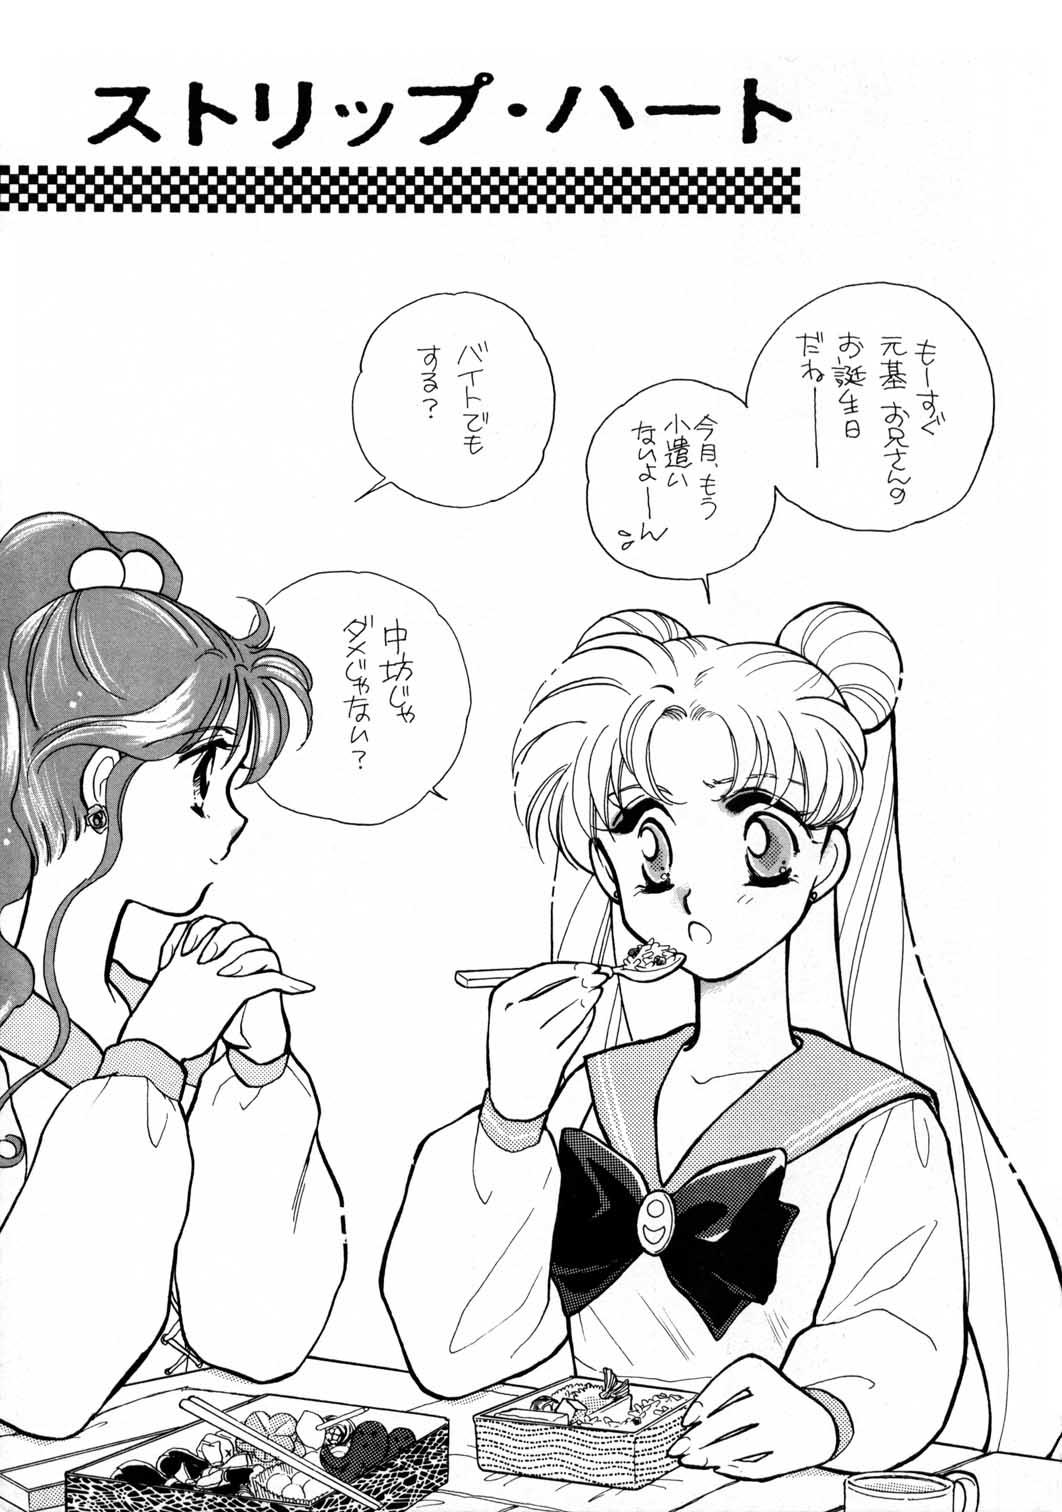 Dick Sucking Sailor Moon JodanJanaiyo - Sailor moon Pigtails - Page 6